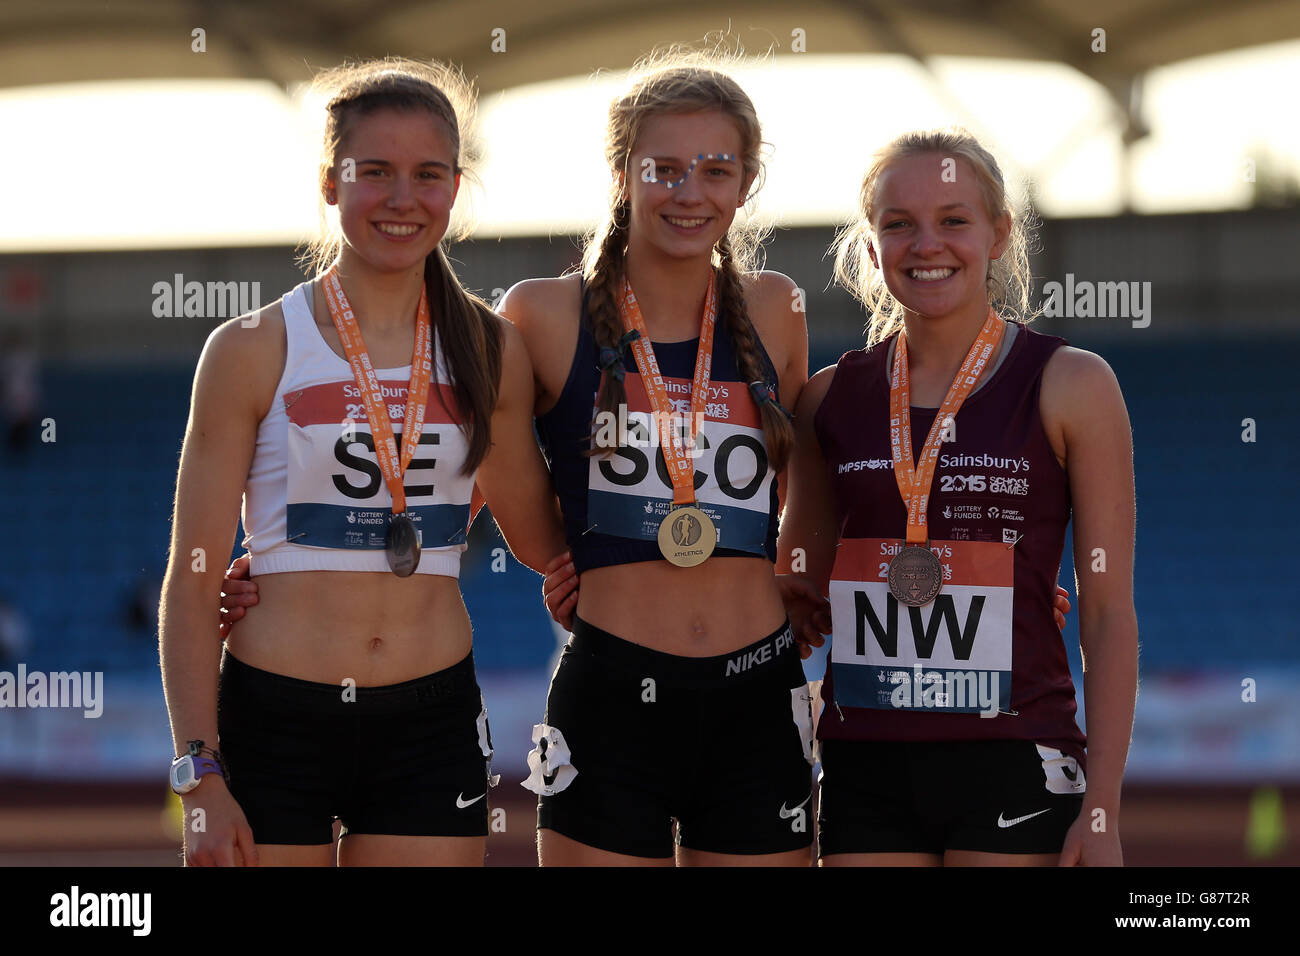 (l-r) Chloe Sharp, de Inglaterra del sudeste, Erin Wallace, de Escocia, y Katie Lowery, de Inglaterra del noroeste, reciben sus medallas de 1500m durante la ceremonia de la medalla en los Juegos escolares de Sainsbury 2015 en el Manchester Regional Arena. Foto de stock